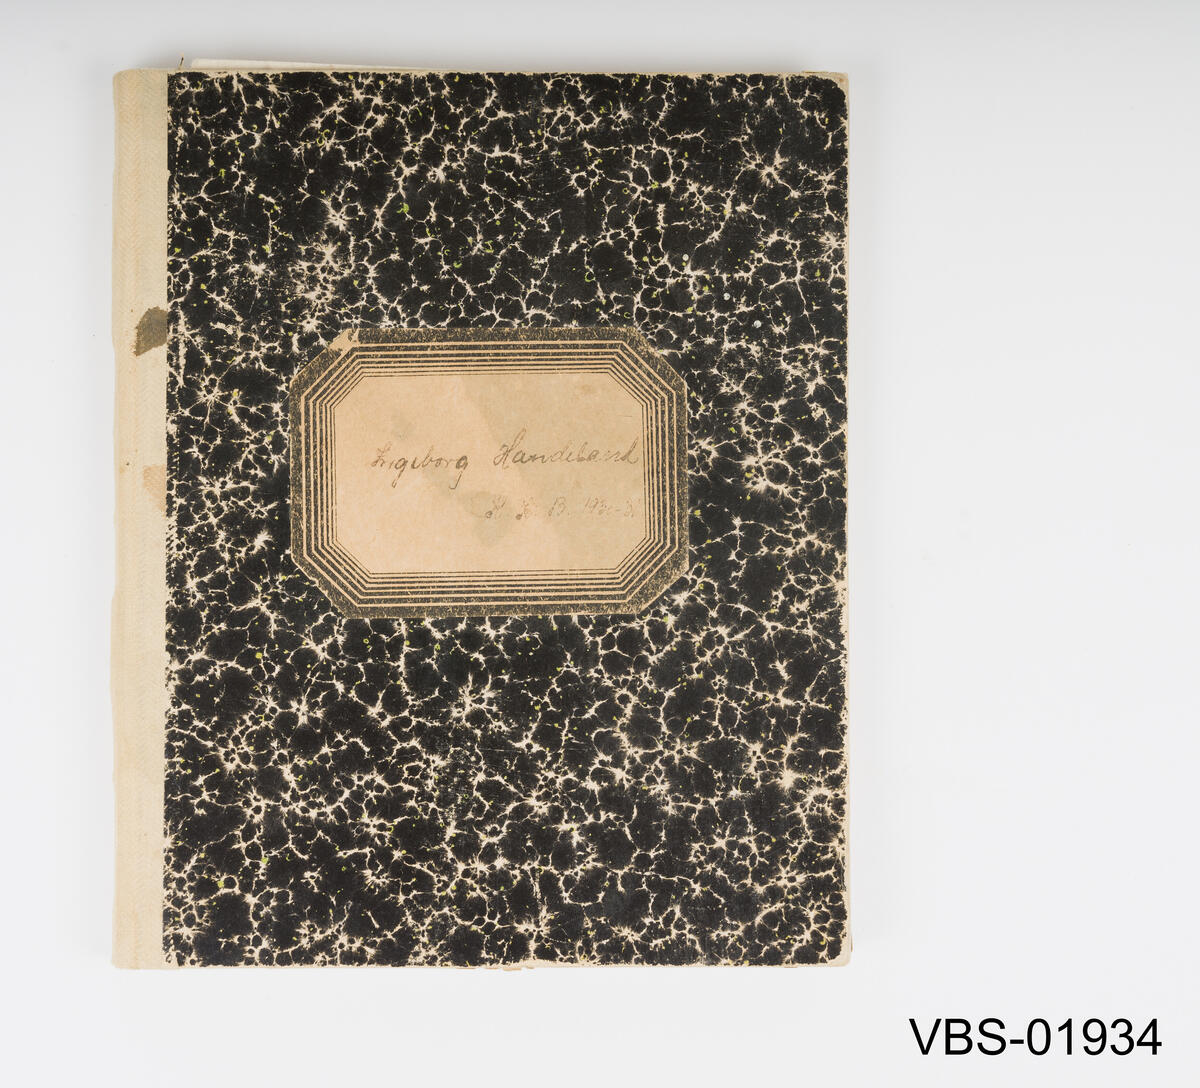 Notatbok med håndskrevet (penn og svart blekk) notater fra jordmor utdanning, mellom 1930 og 1931.
Gjenstanden har linjerte ark, omslag i spettet svart farge, rygg i beige bomullslerret.
På omslaget er det en papirlapp med håndskreven tekst og navnet av eieren.